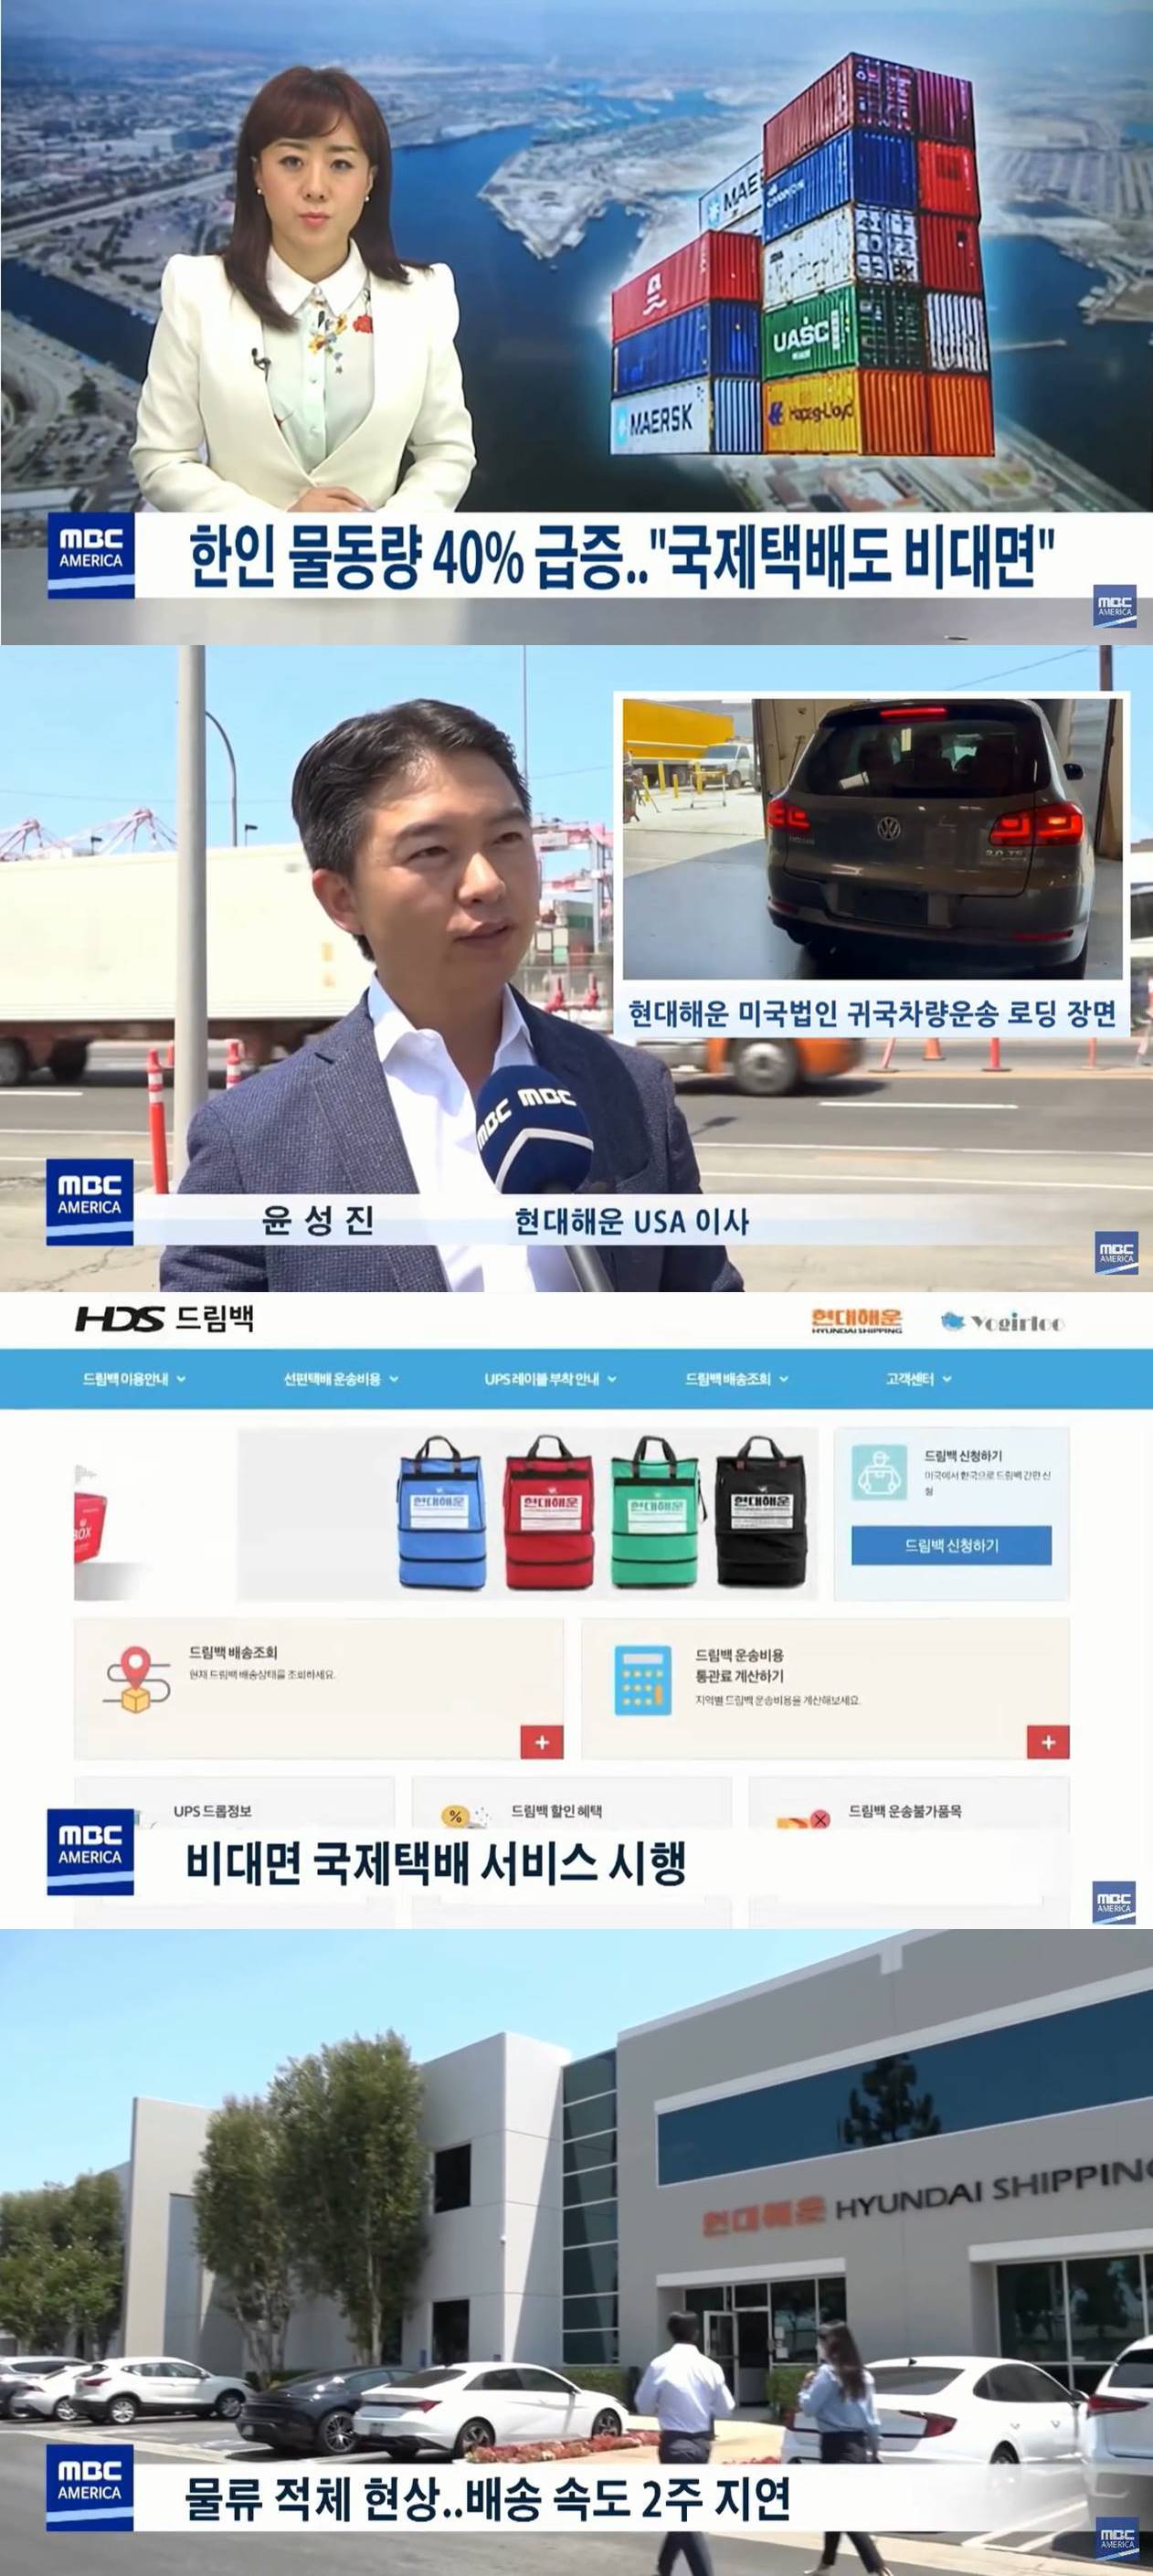 MBC AMERICA 뉴스투나잇 보도 - '코로나19 영향으로 해외 · 귀국이사 국제택배 물동량 전년比 40%↑' 